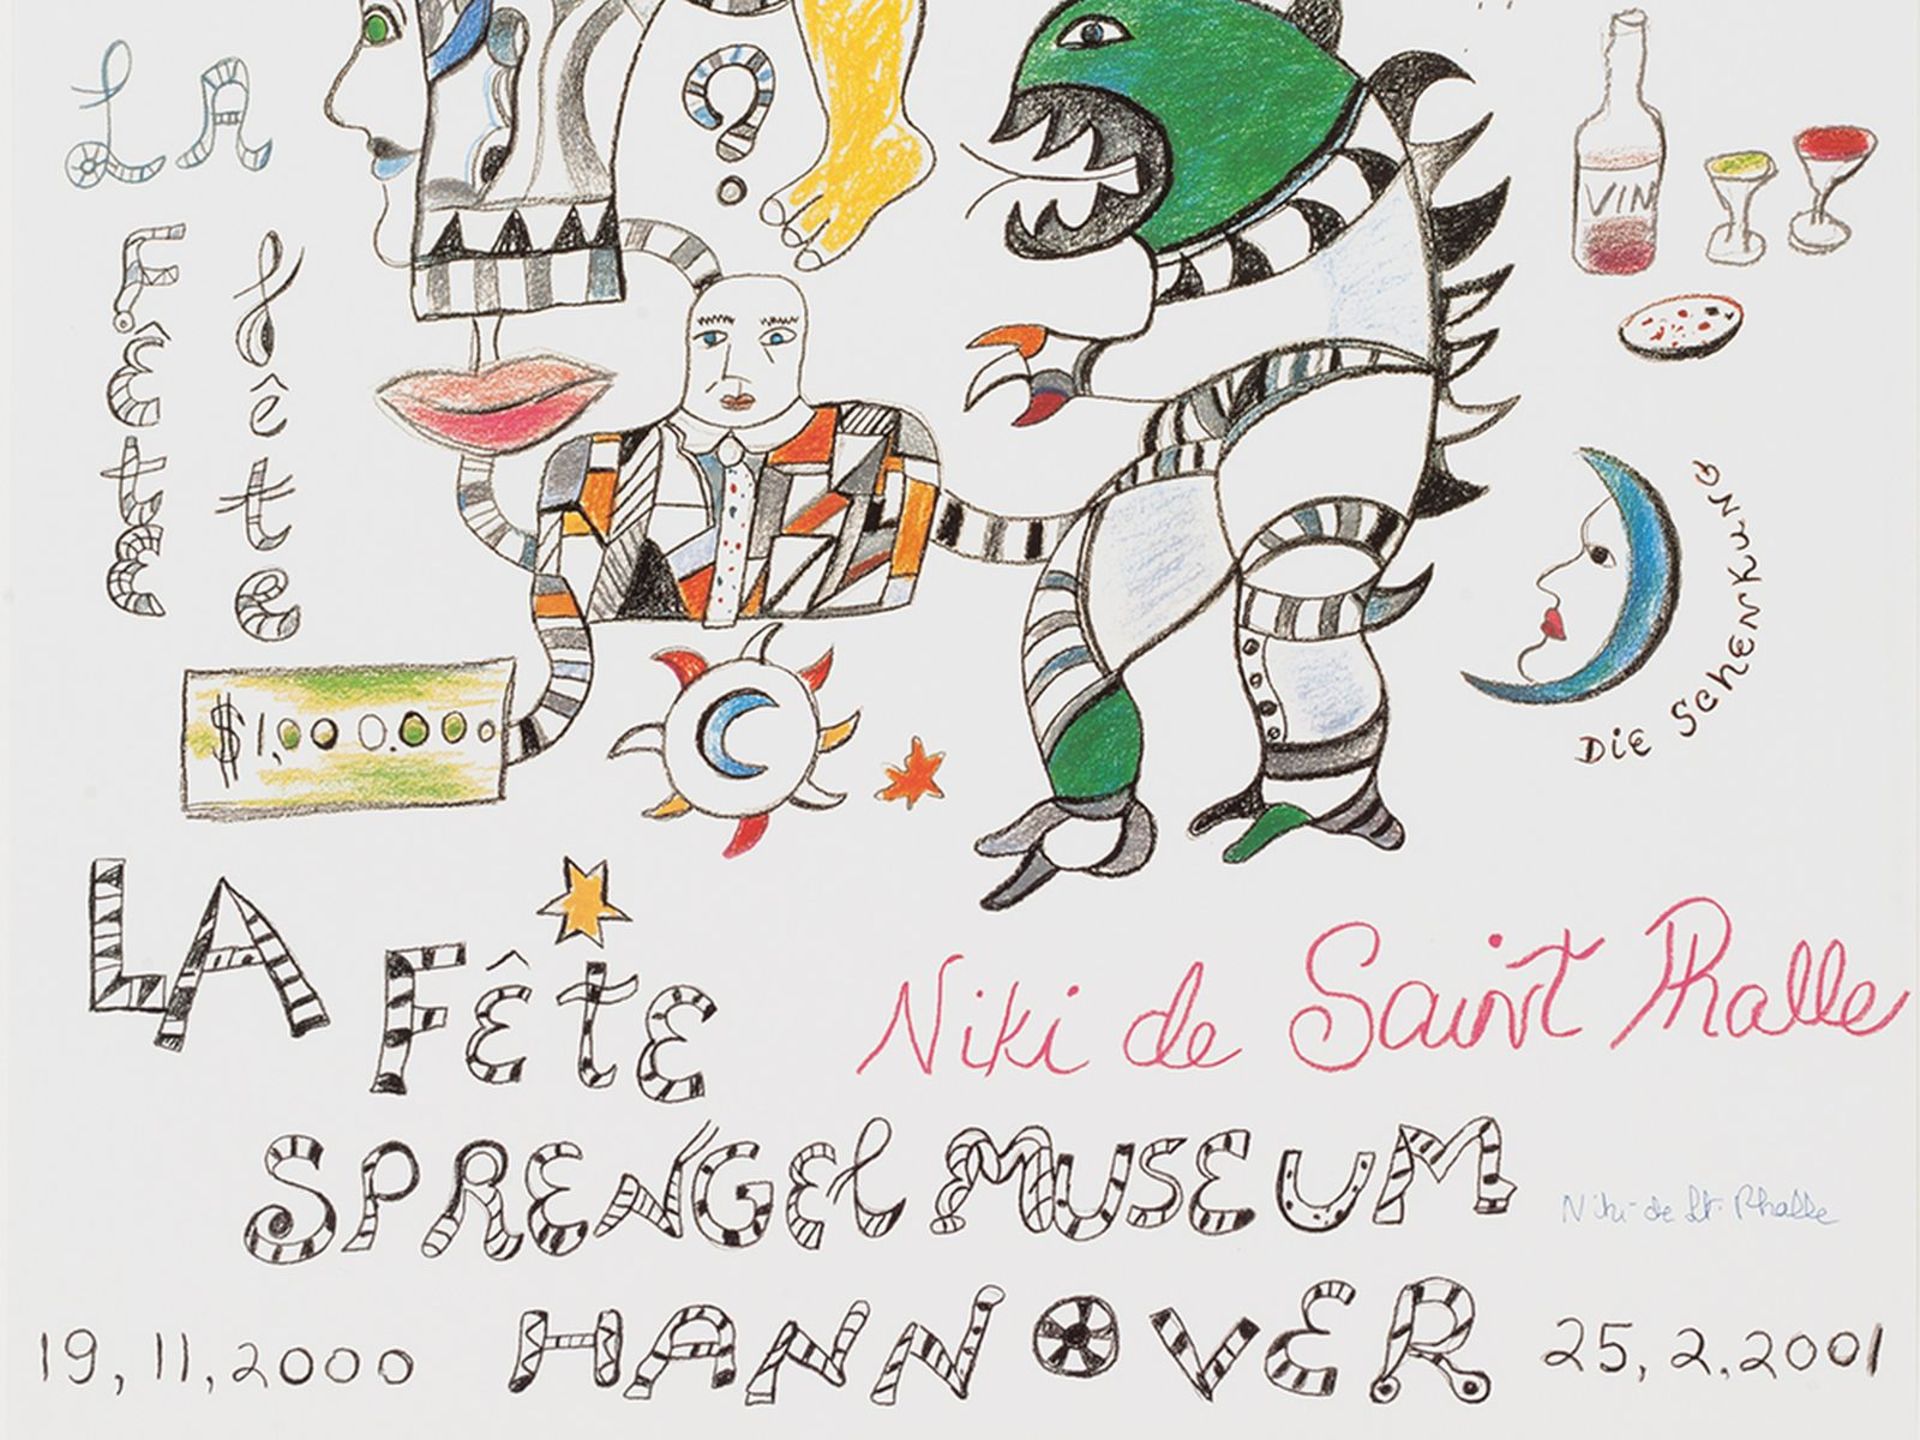 Niki de Saint Phalle, poster "La Fete. The donation " - Image 9 of 9